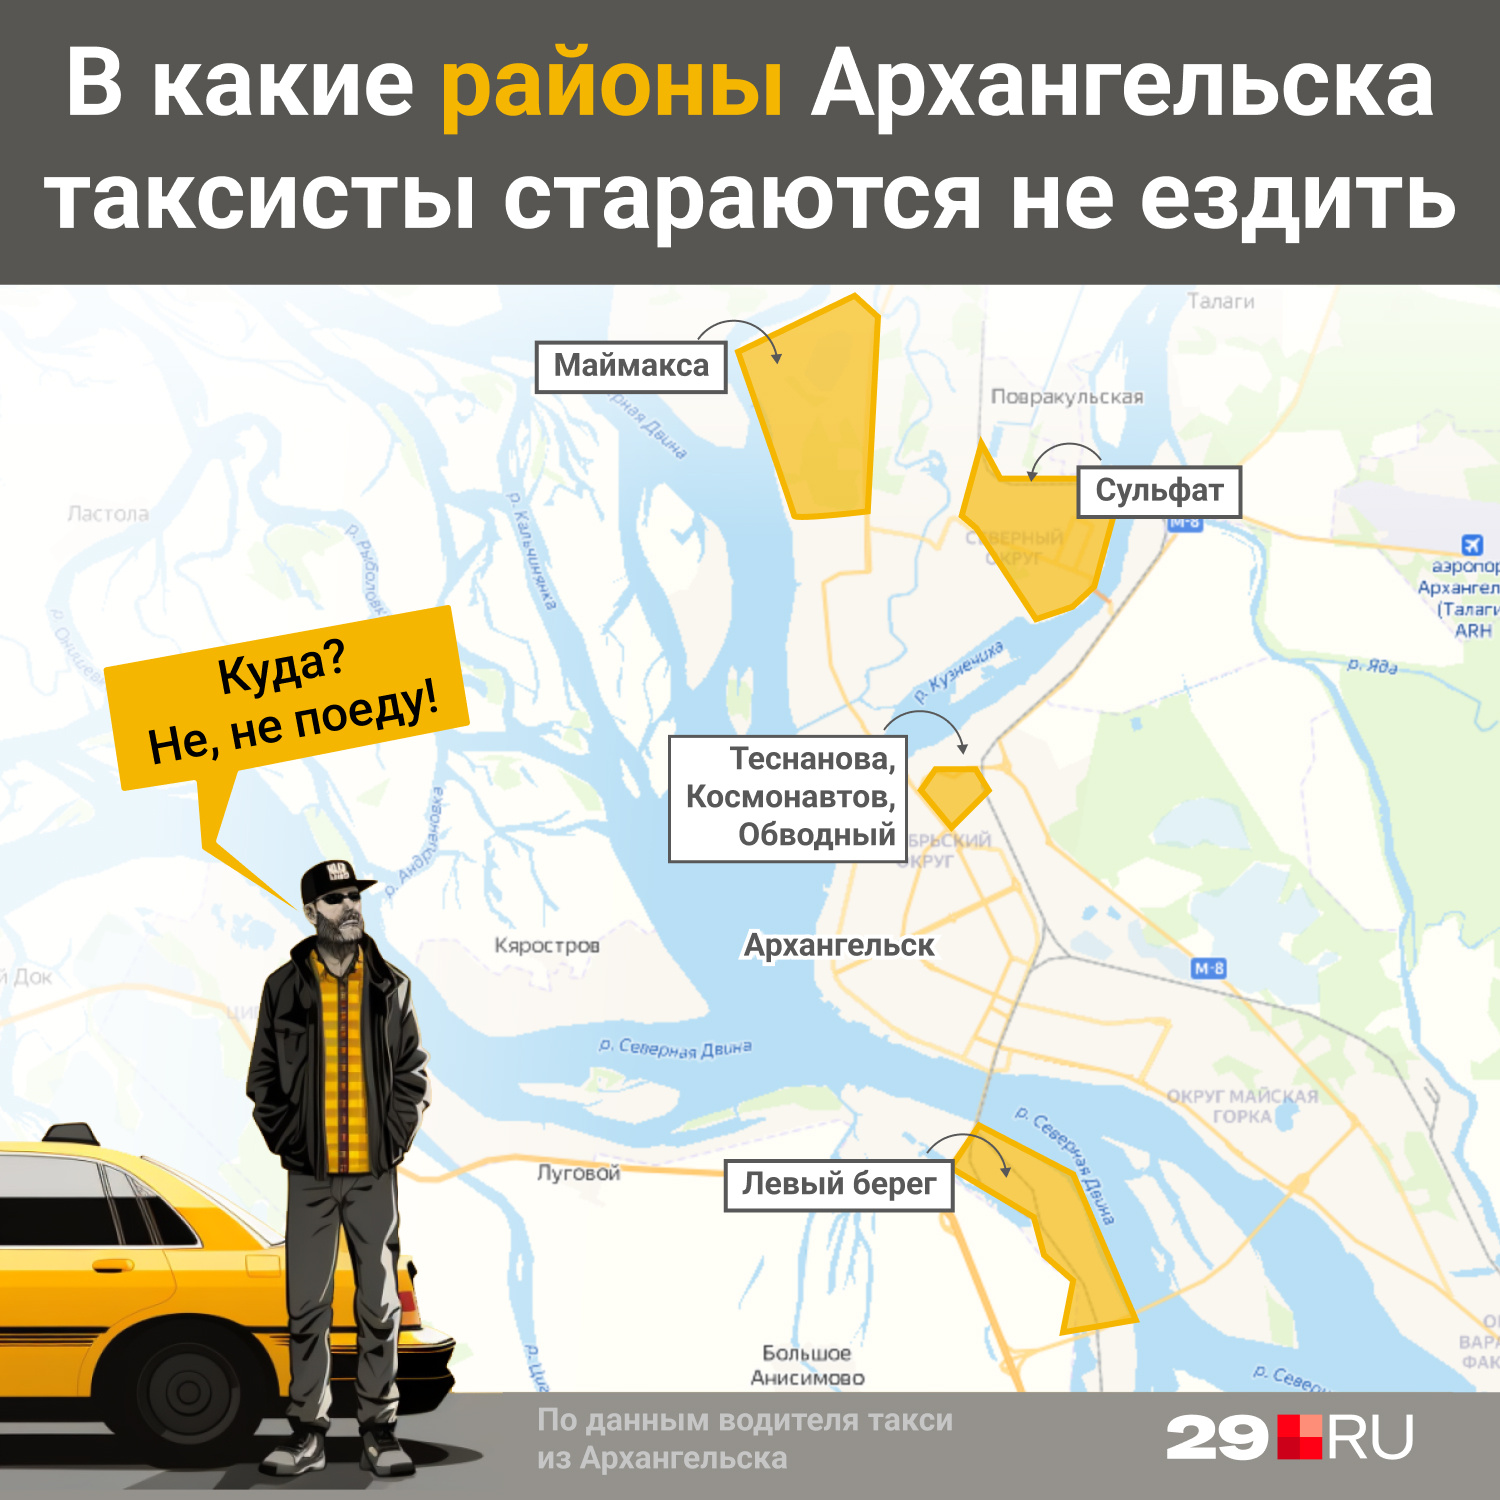 Районы Архангельска, куда такси ездить не любят, мы показываем в инфографике